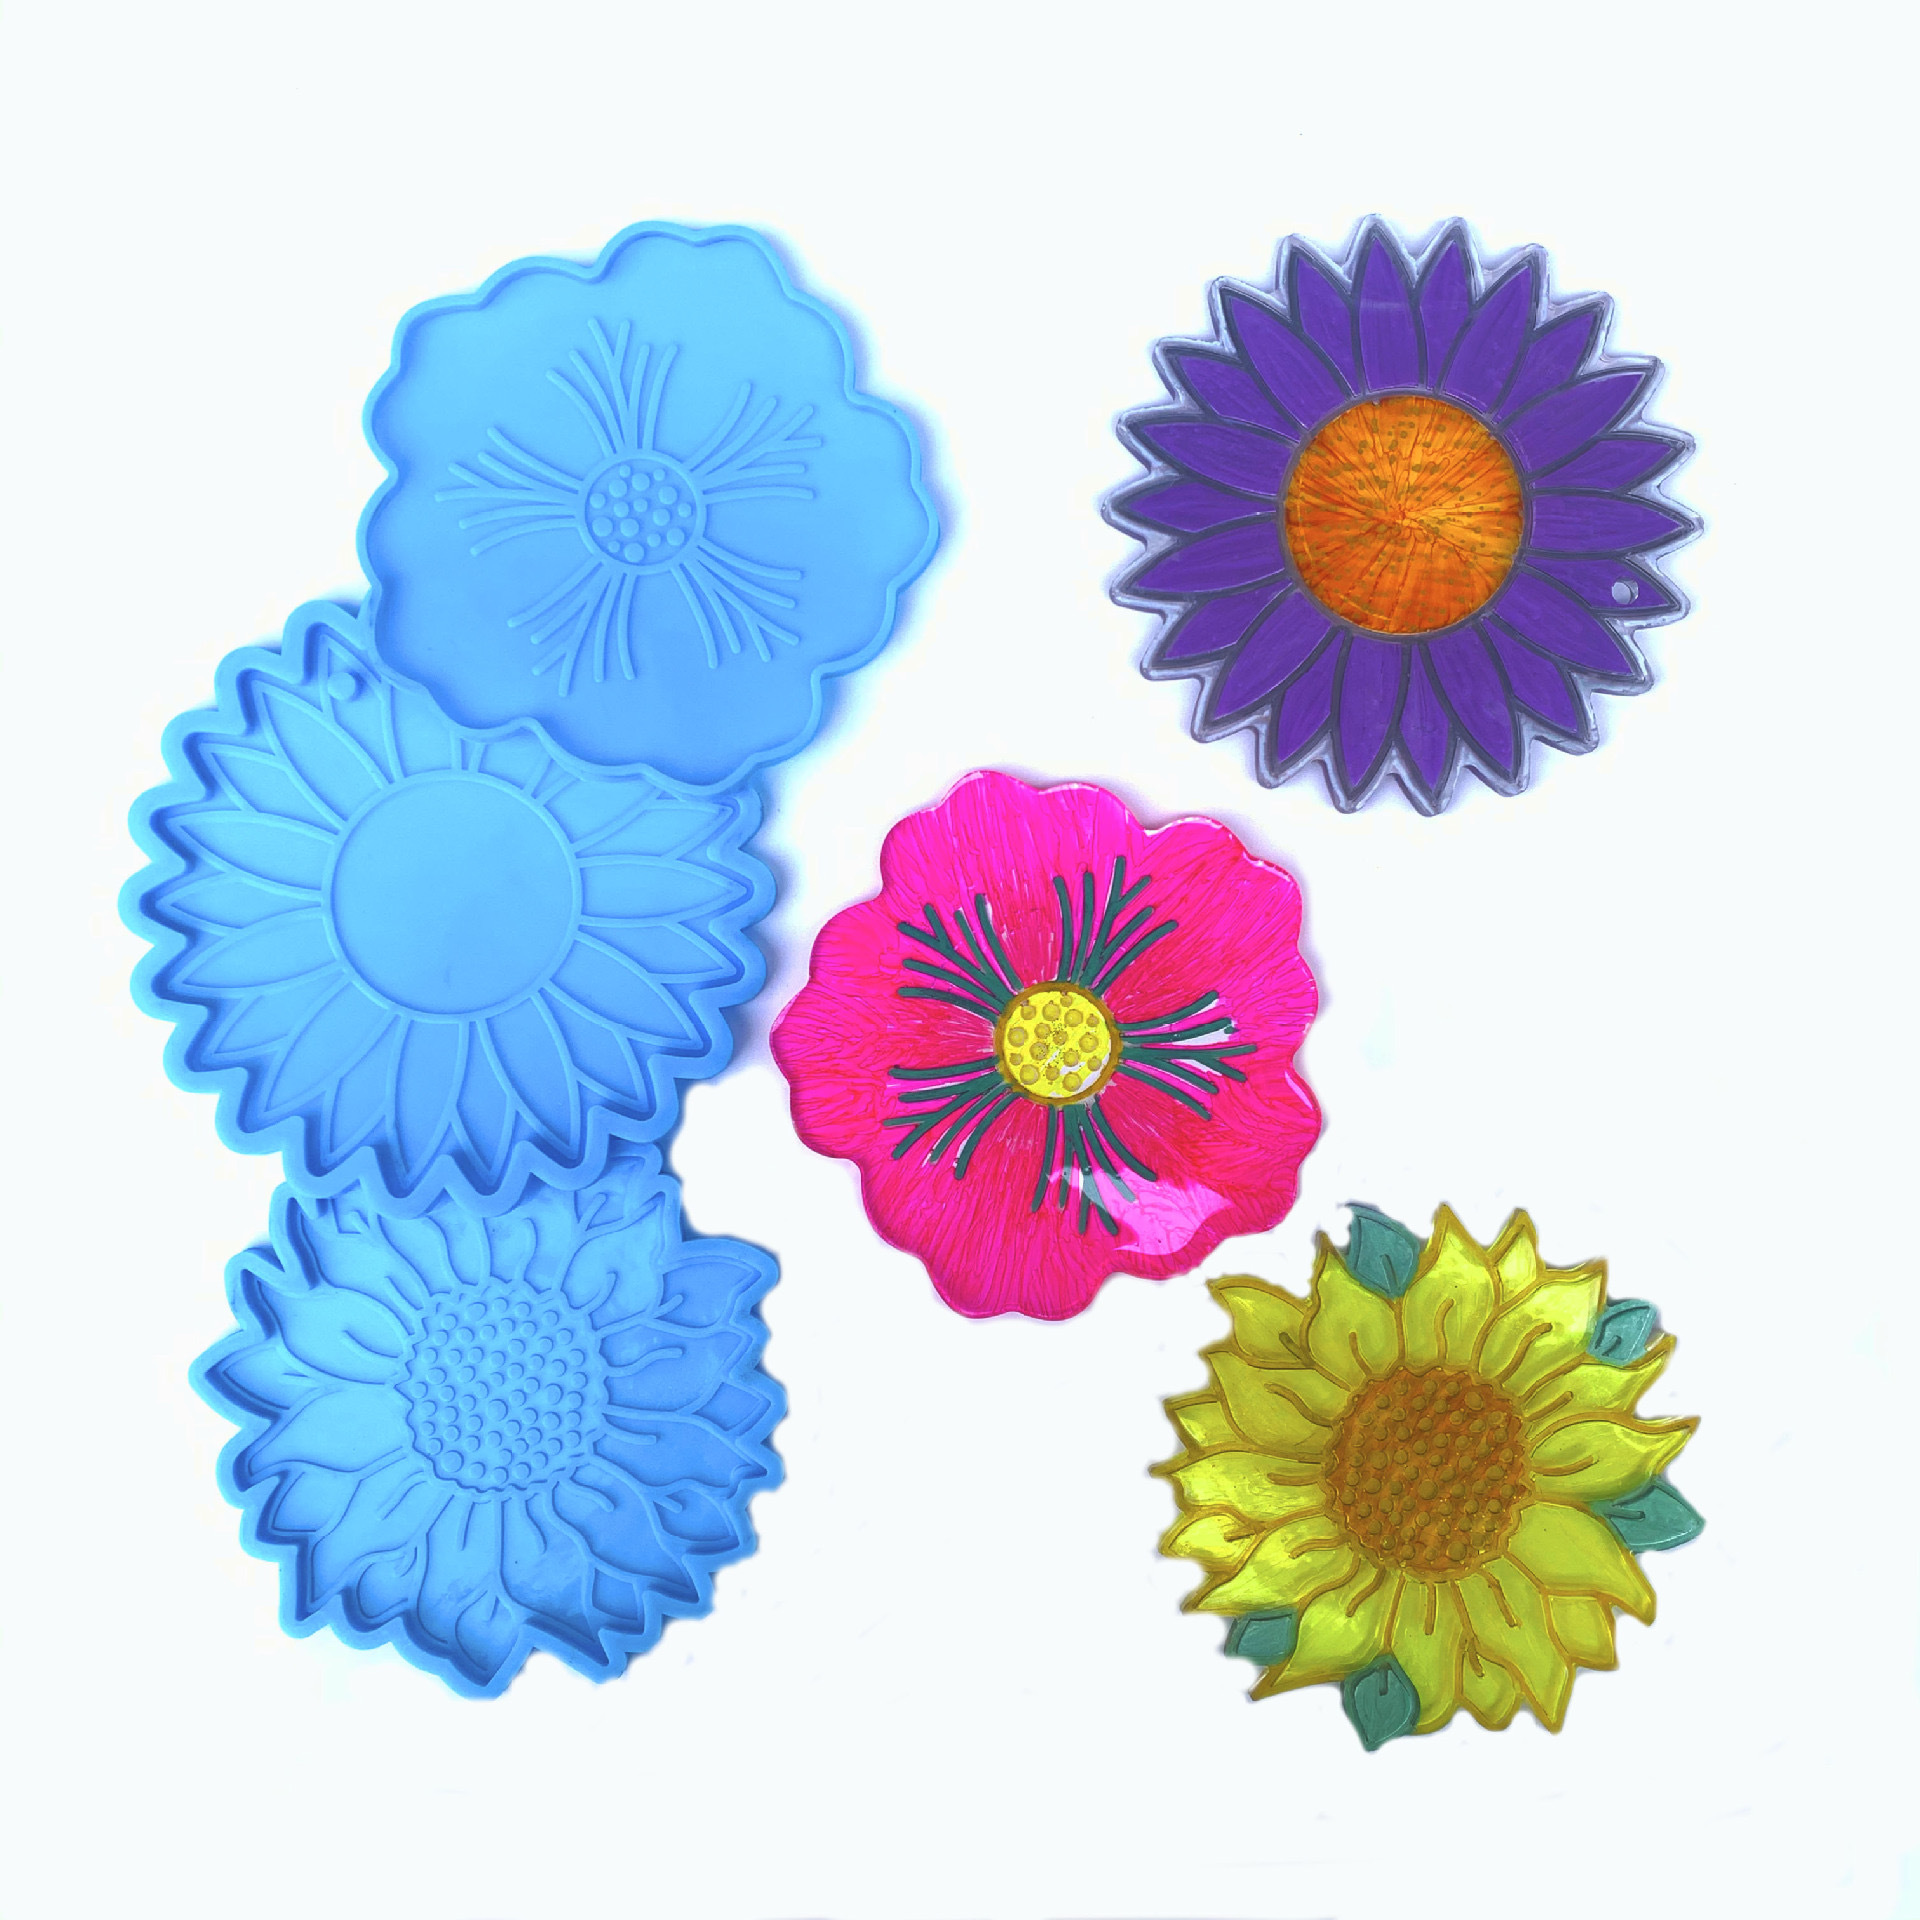 MQSDL Sun ดอกไม้ DIY ถ้วยหัตถศิลป์ Mat แม่พิมพ์เทียนไขเเม่พิมพ์สำหรับทำอาหาร Coaster ทำจานเครื่องมือแม่พิมพ์